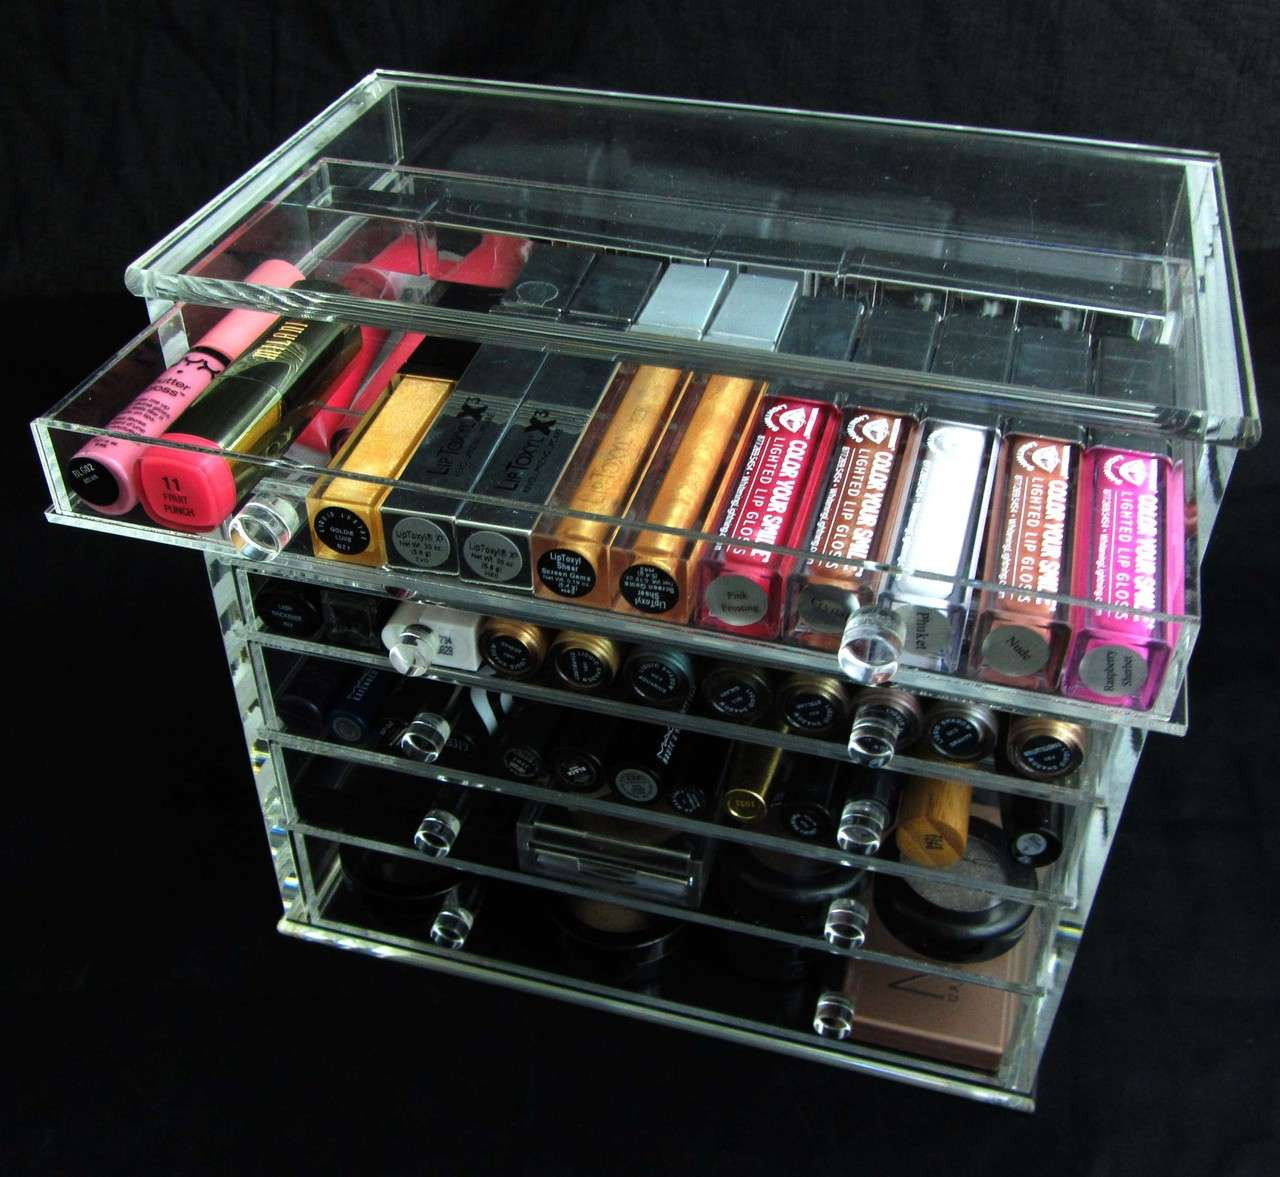 Transparent Desk Acrylic Storage Box, Drawer Organizers, Jewelry